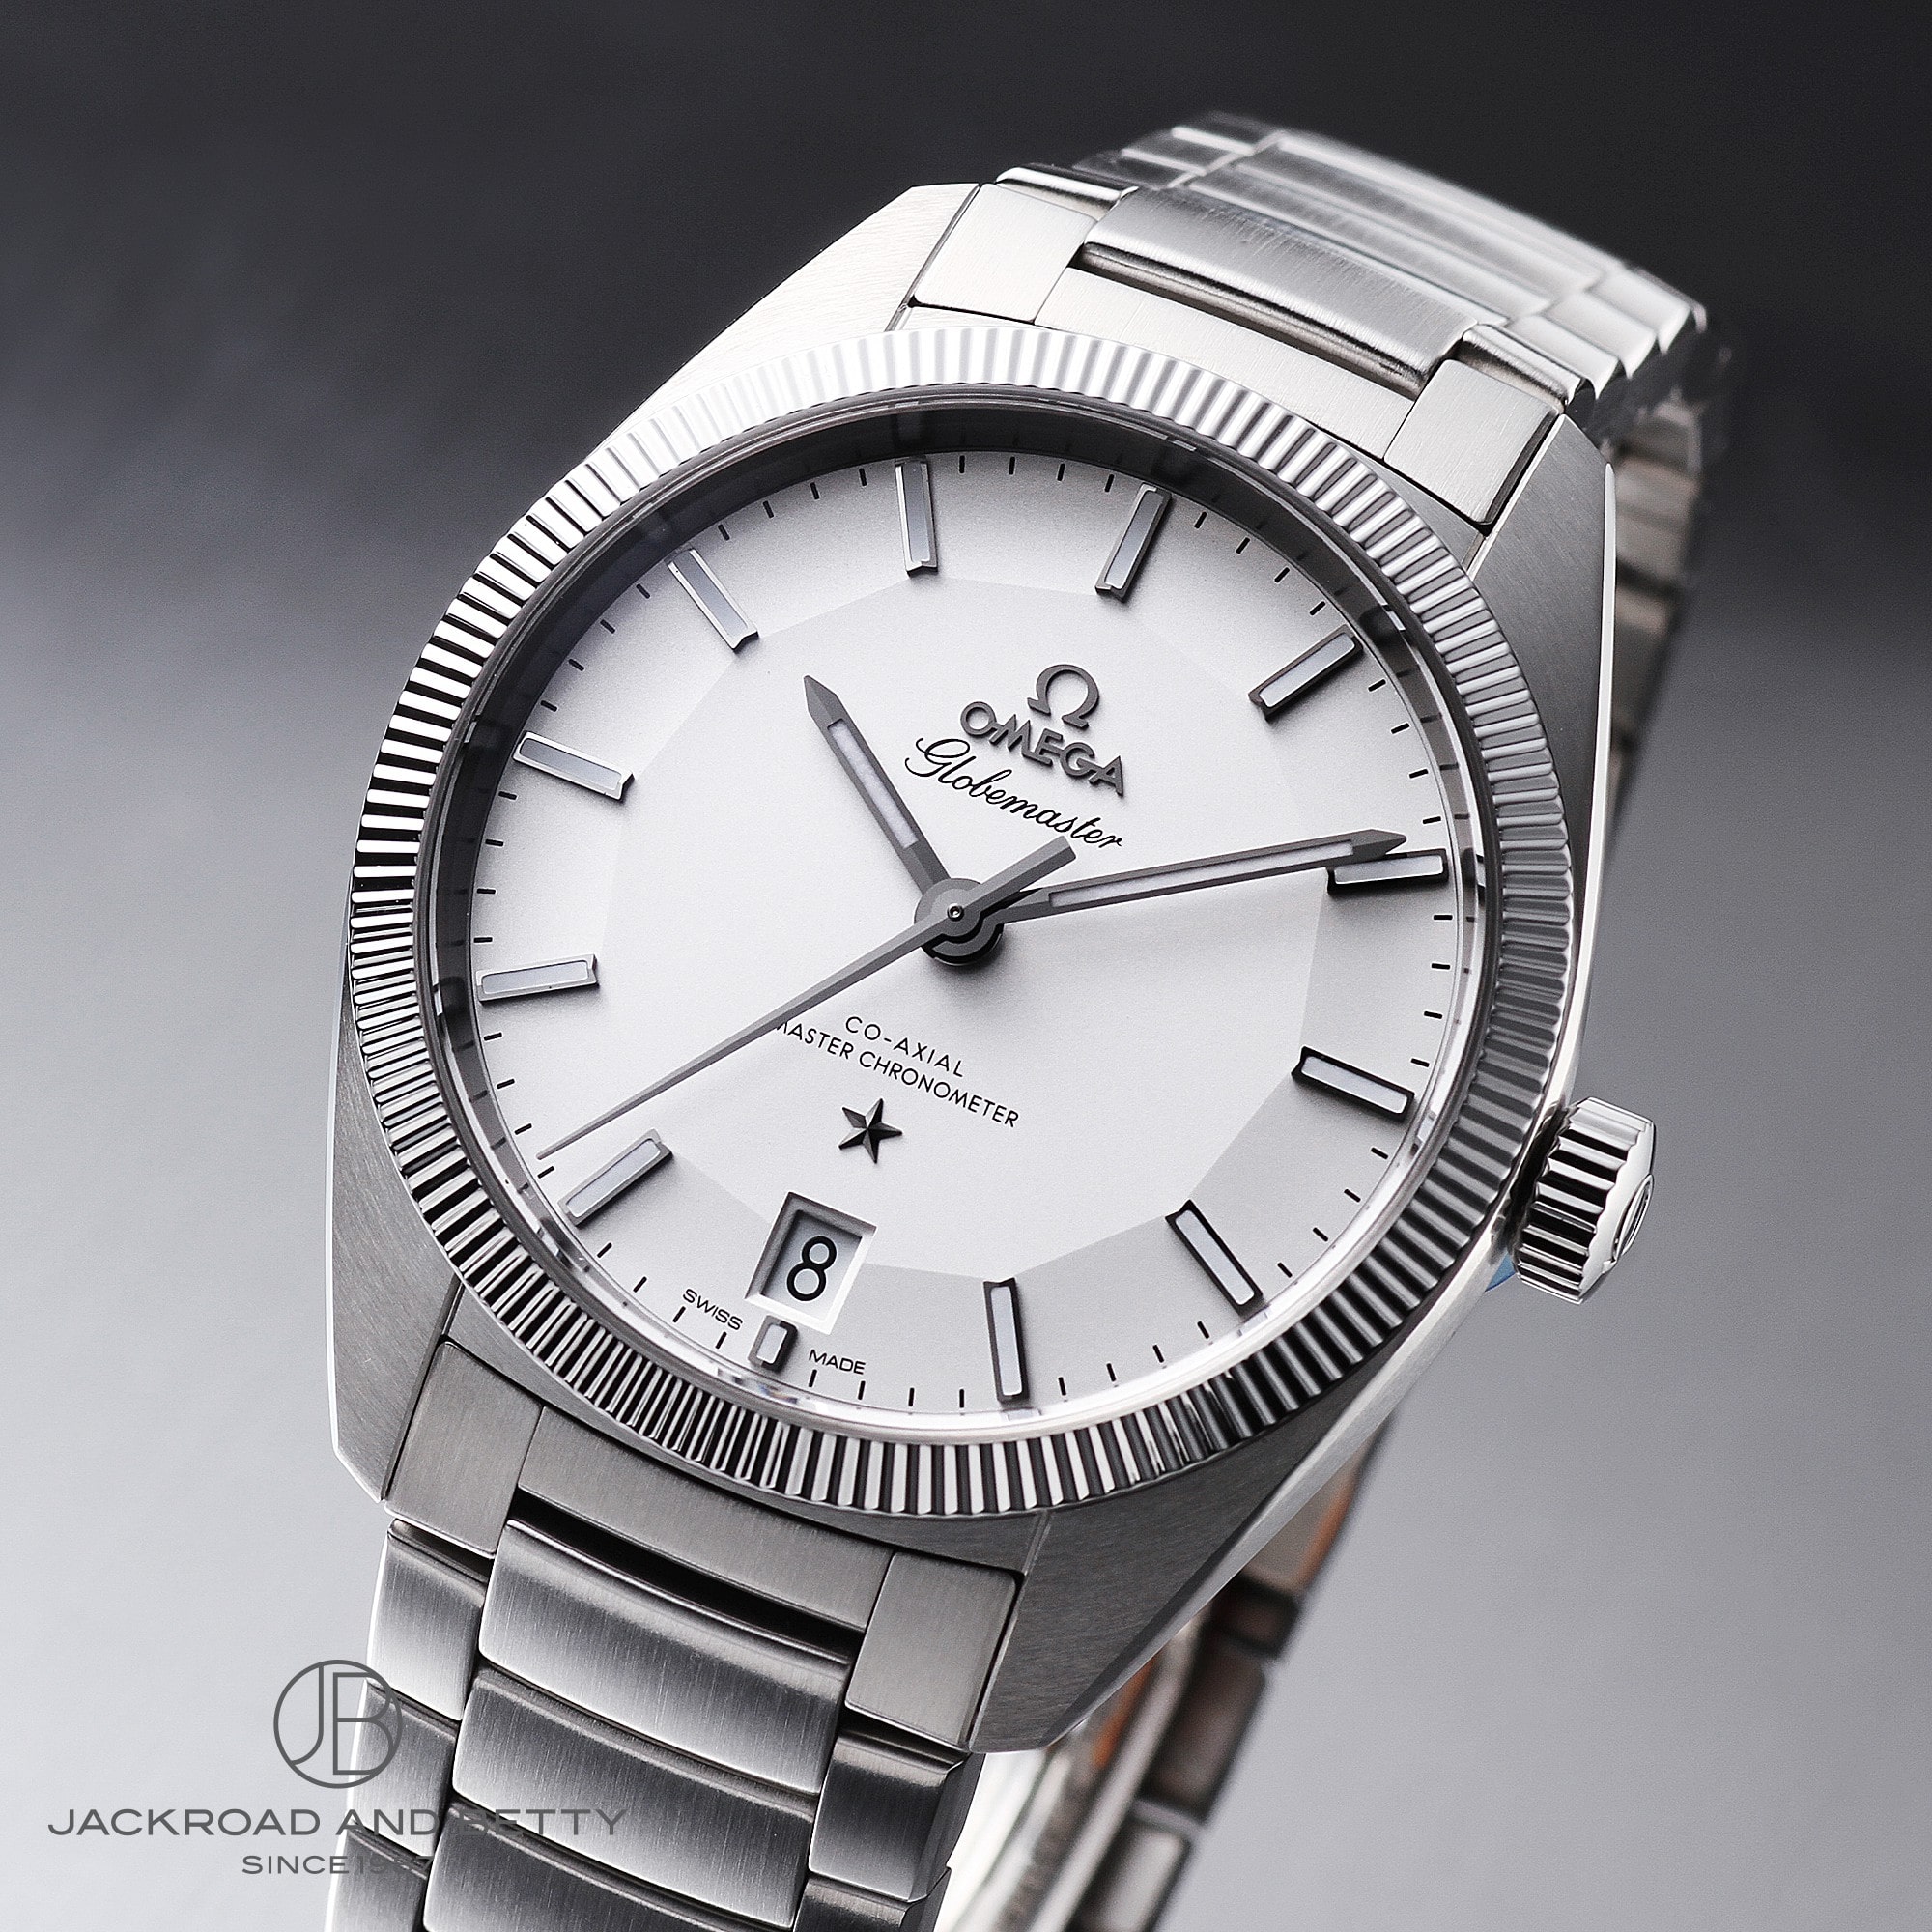 オメガ グローブマスター ホワイト文字盤 シルバー文字盤 39mm 腕時計